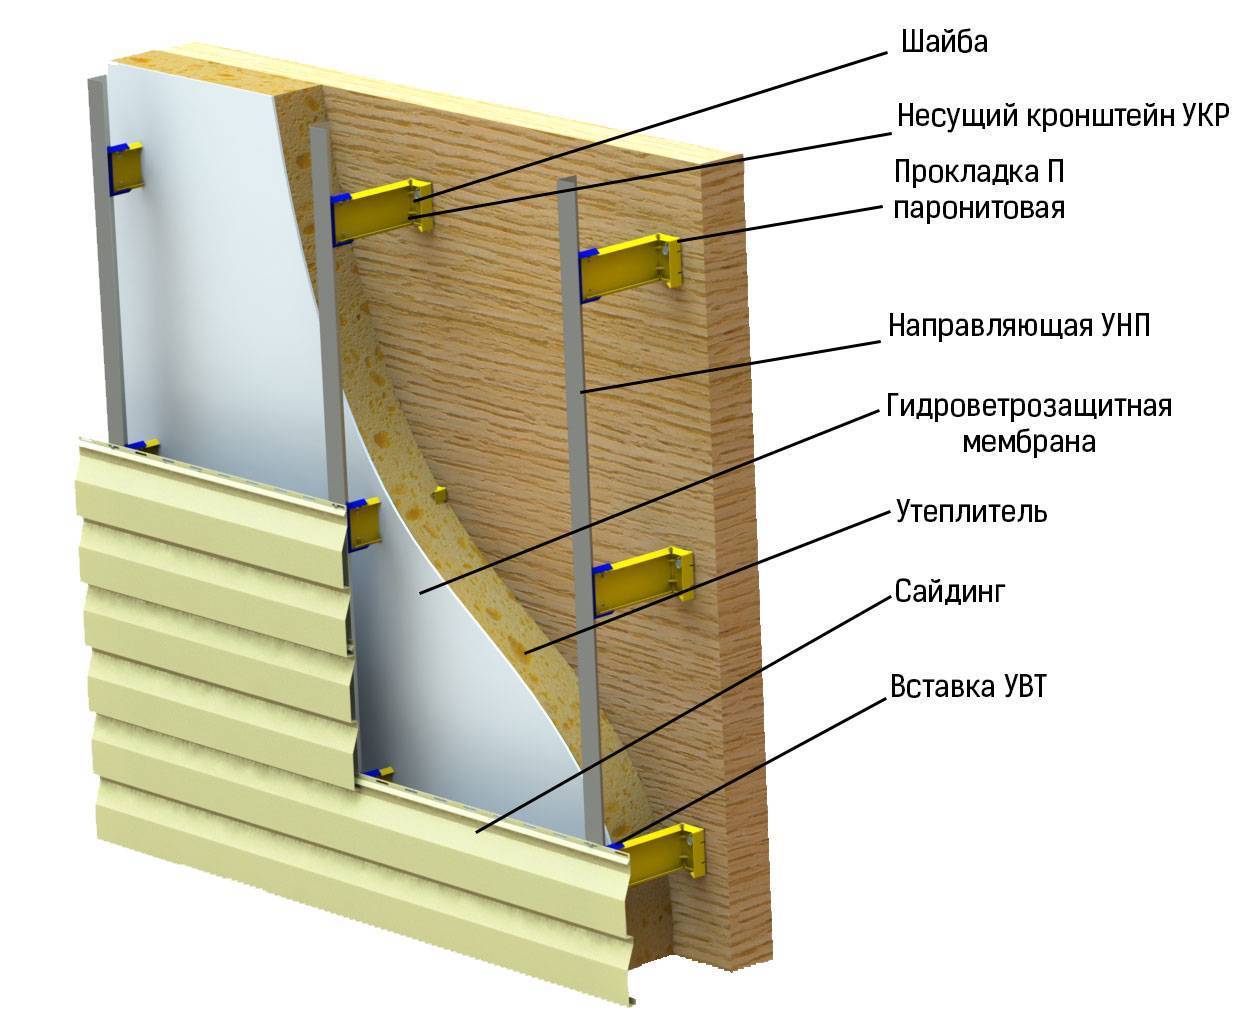 Как крепить утеплитель к деревянной стене: порядок работы